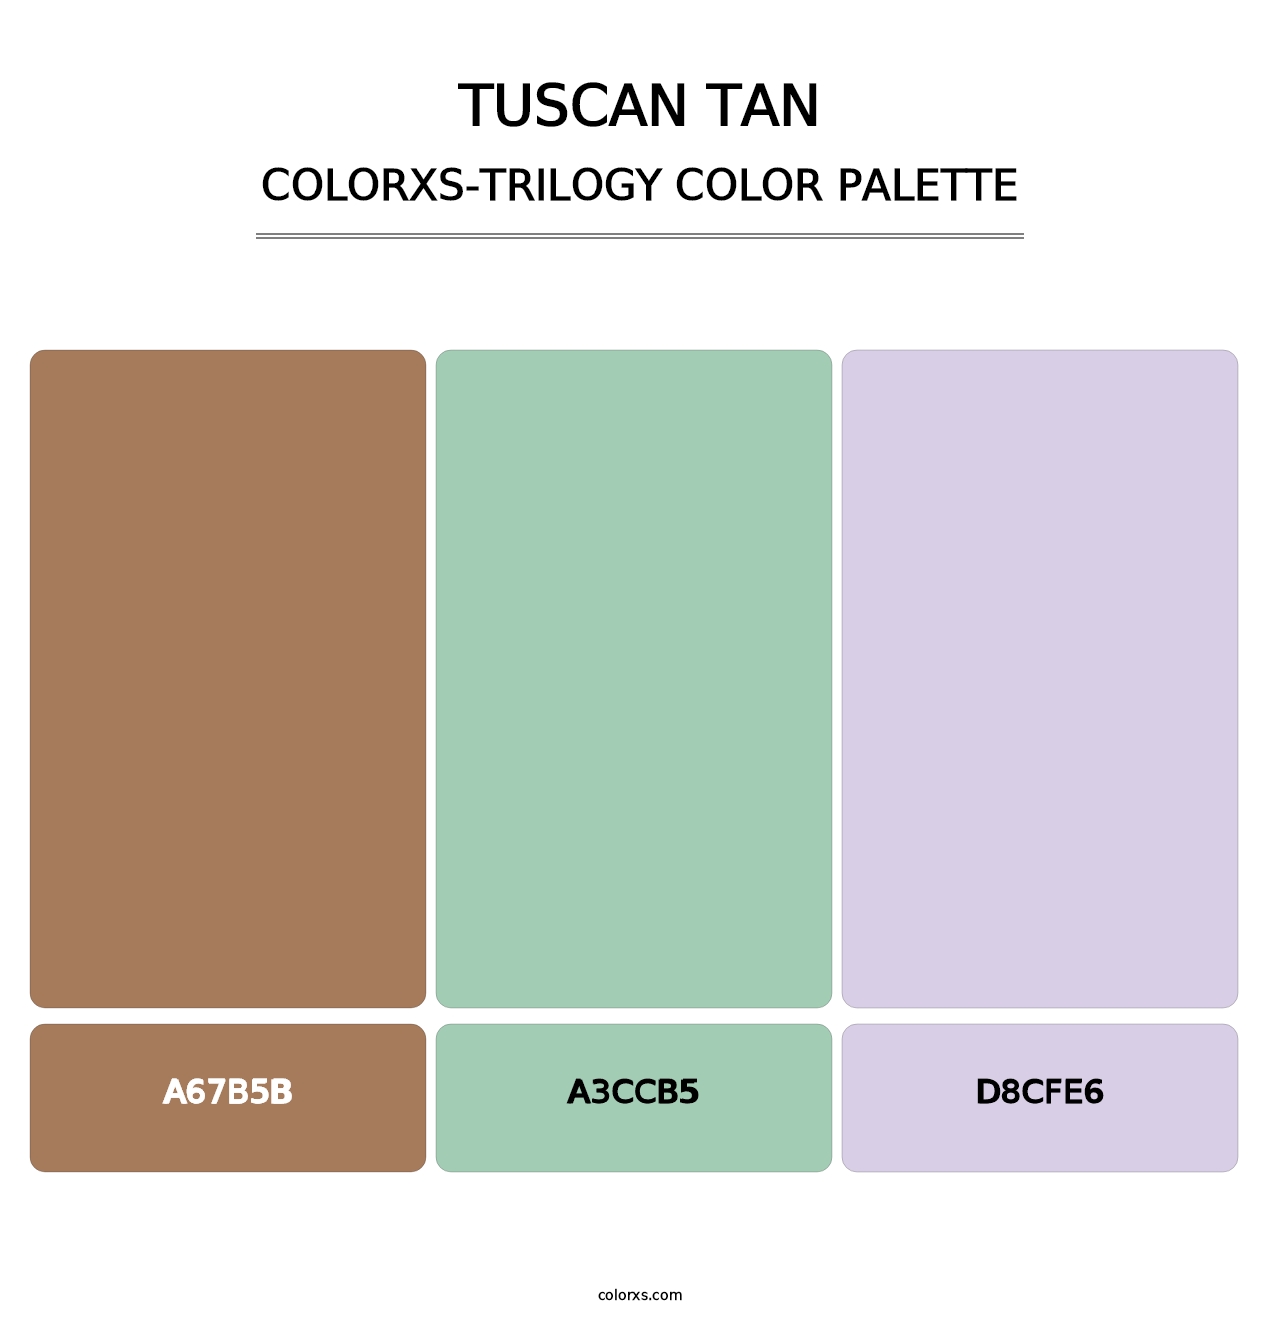 Tuscan Tan - Colorxs Trilogy Palette